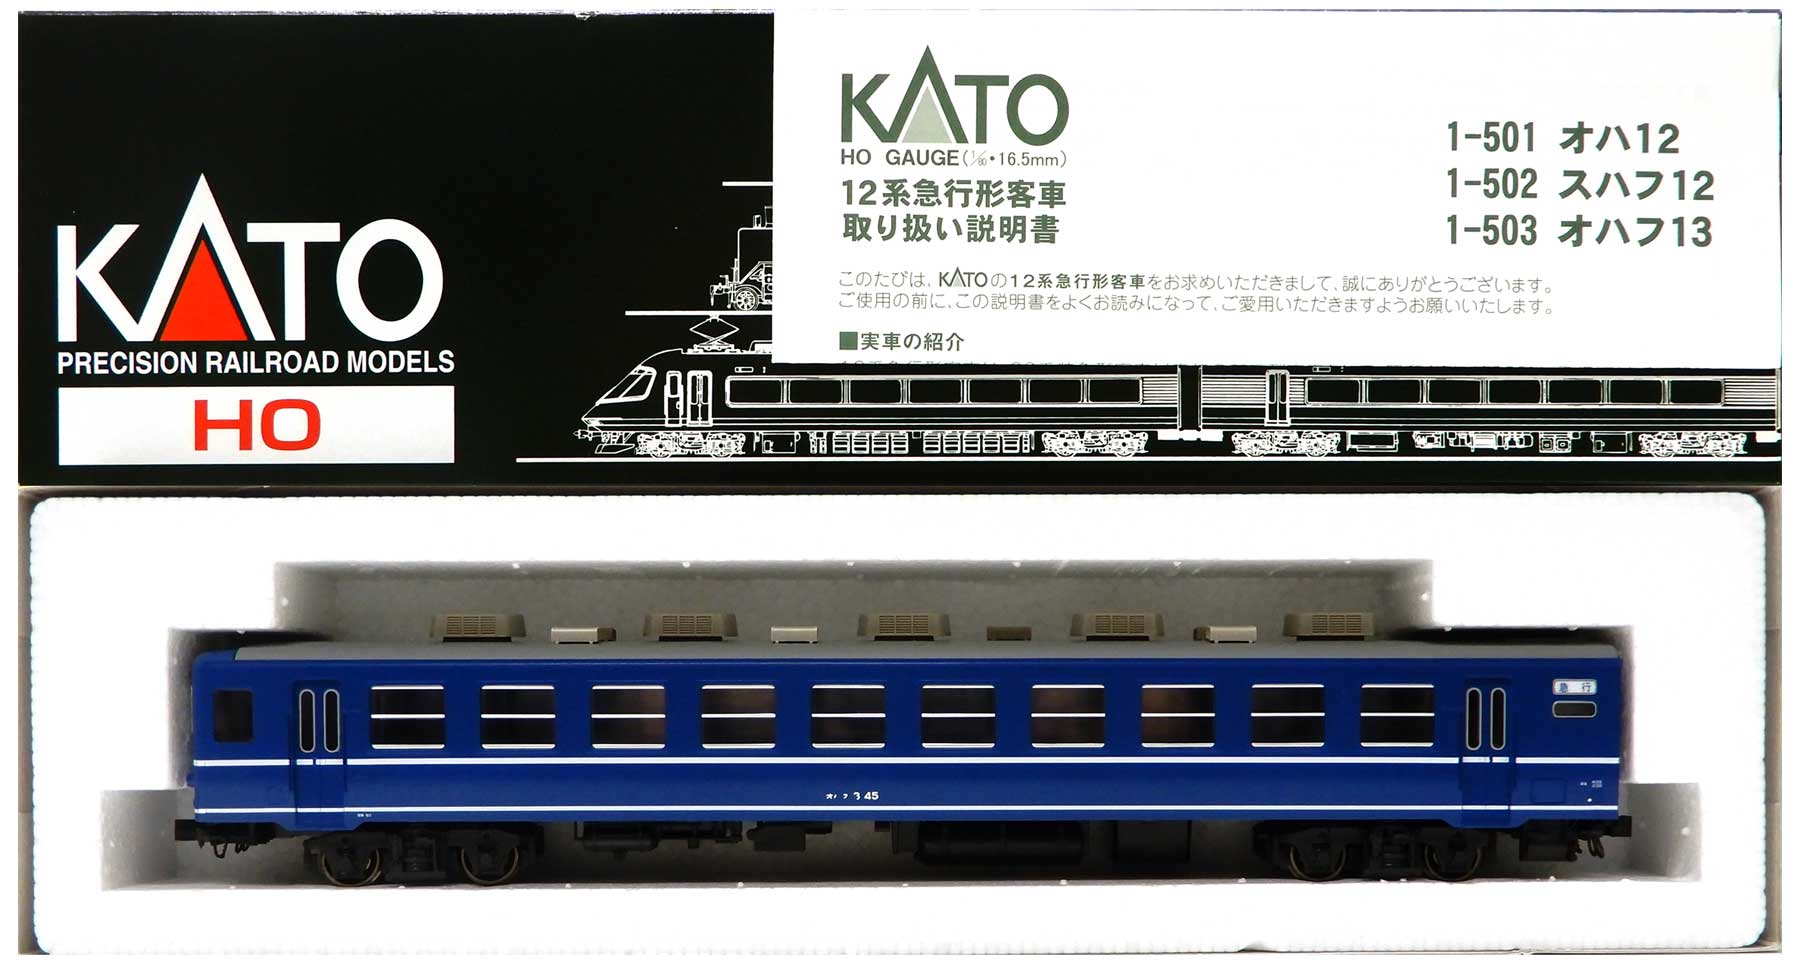 16番 HOゲージ KATO 12系客車 スハフ12、オハ12、オハフ13 6両 -